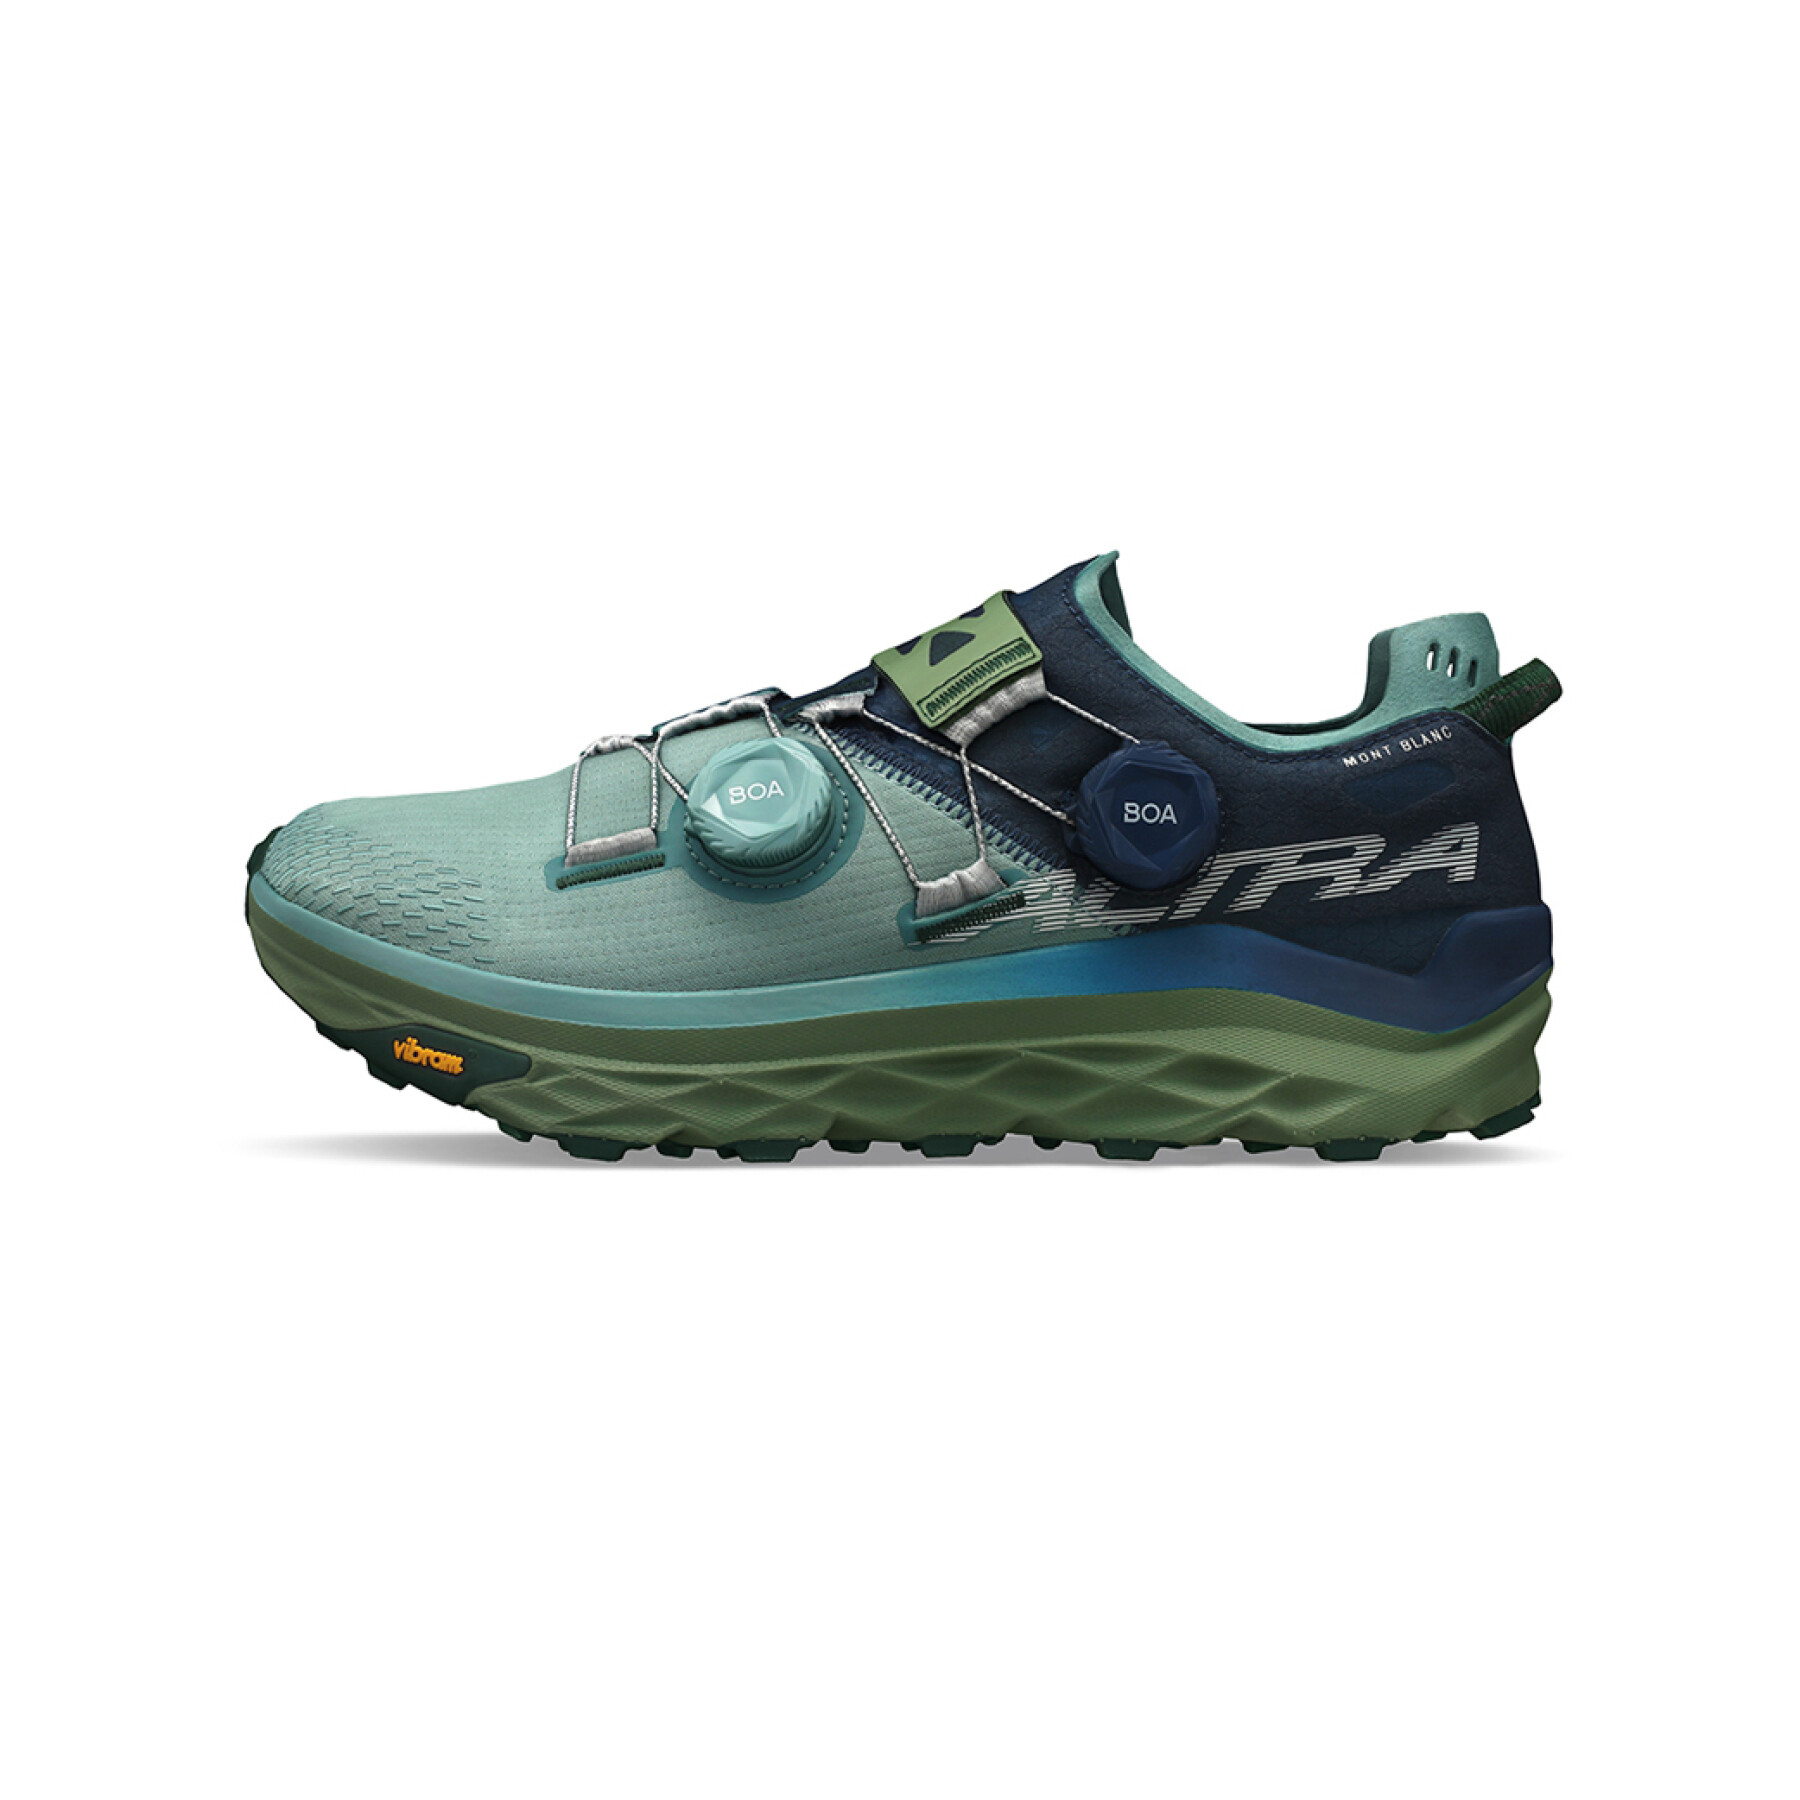 Trailrunning-Schuhe für Frauen Altra Mont Blanc Boa